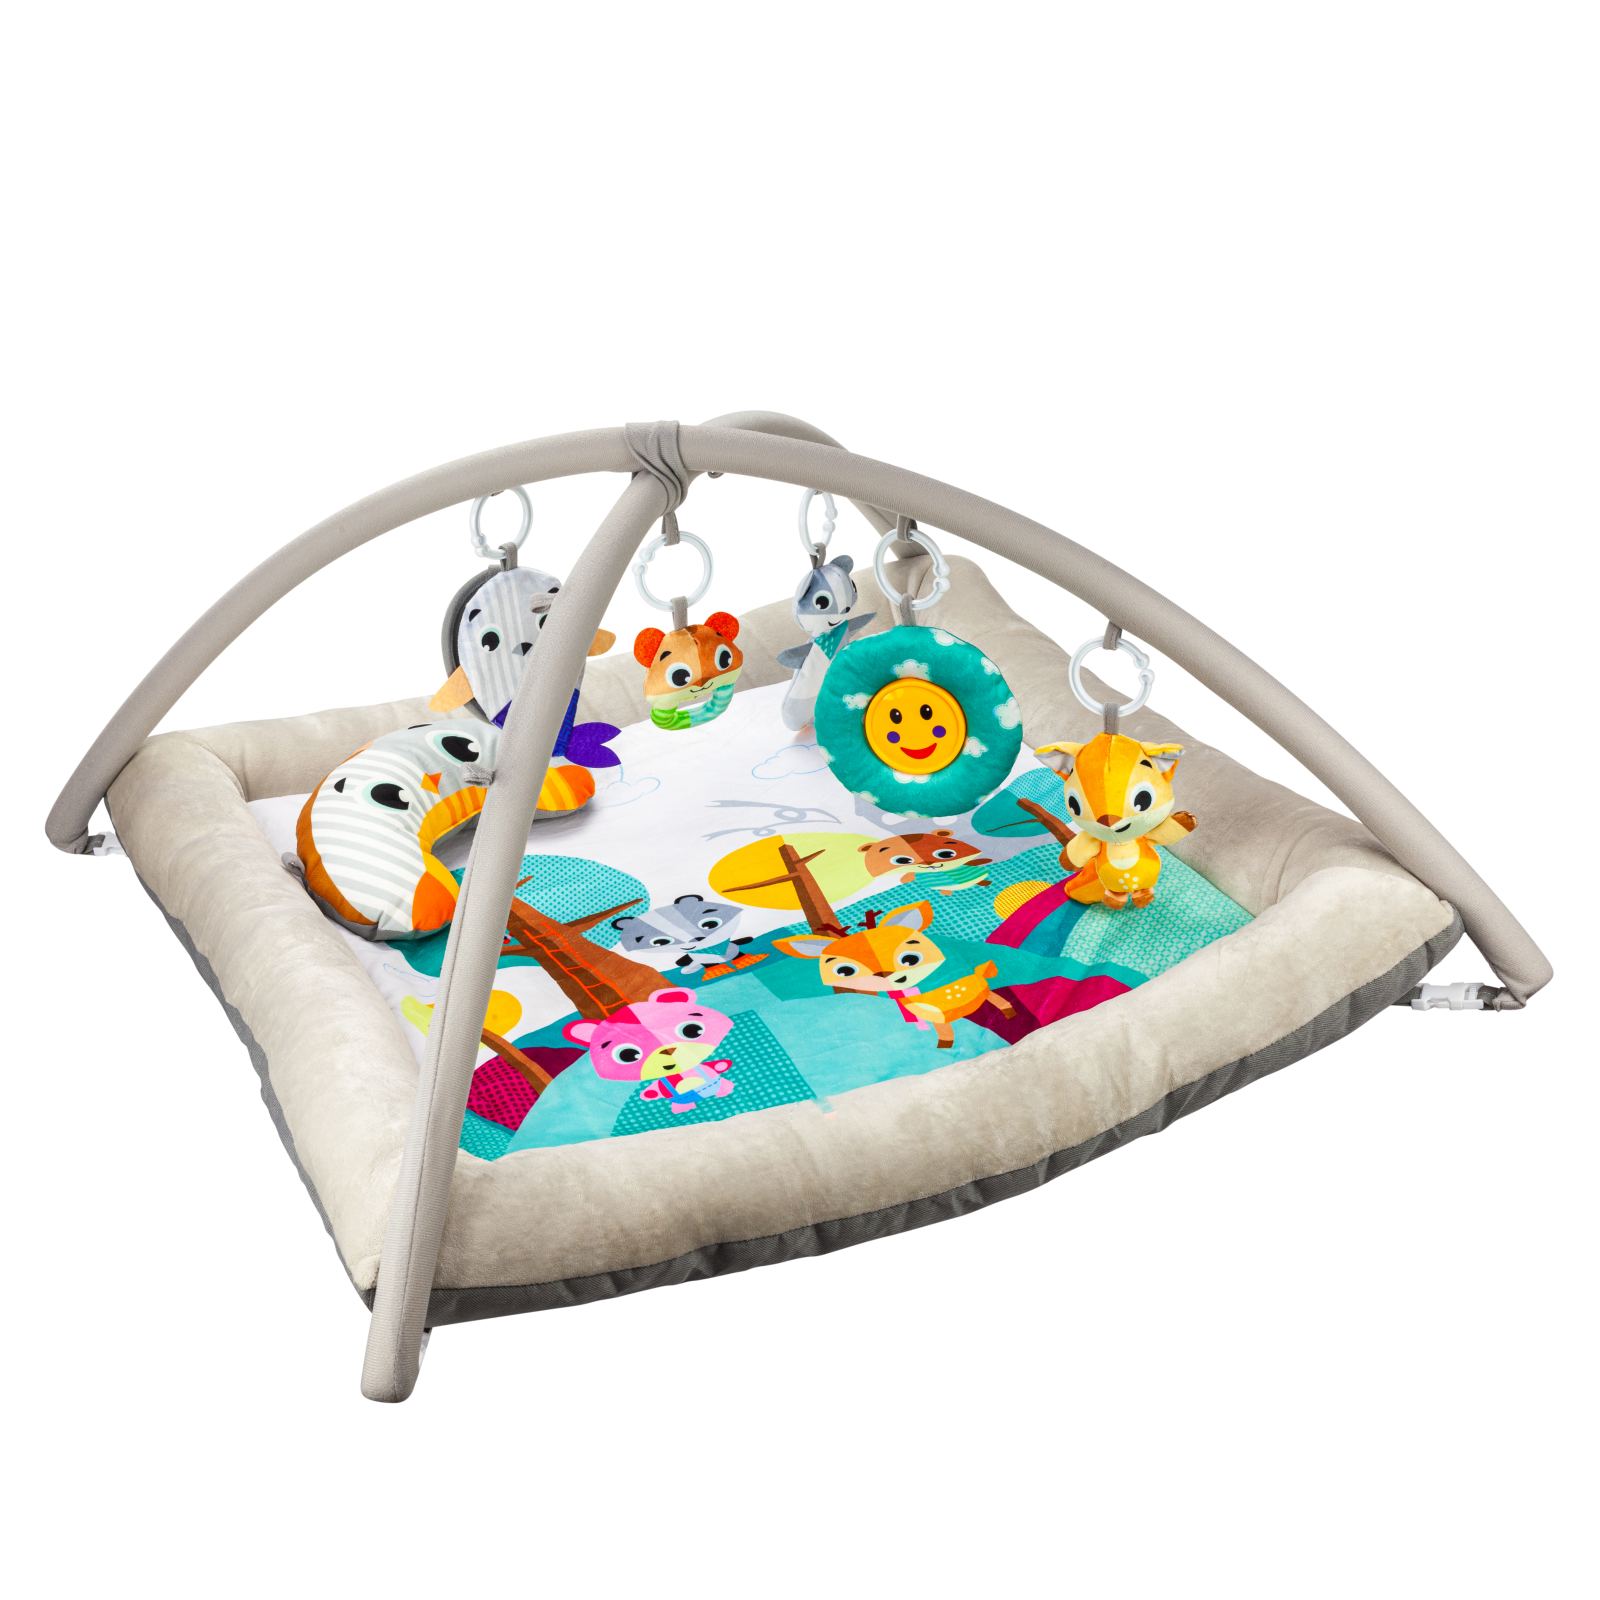 Развивающий игровой коврик Solmax для новорожденных с дугой и игрушками, бежевый/голубой